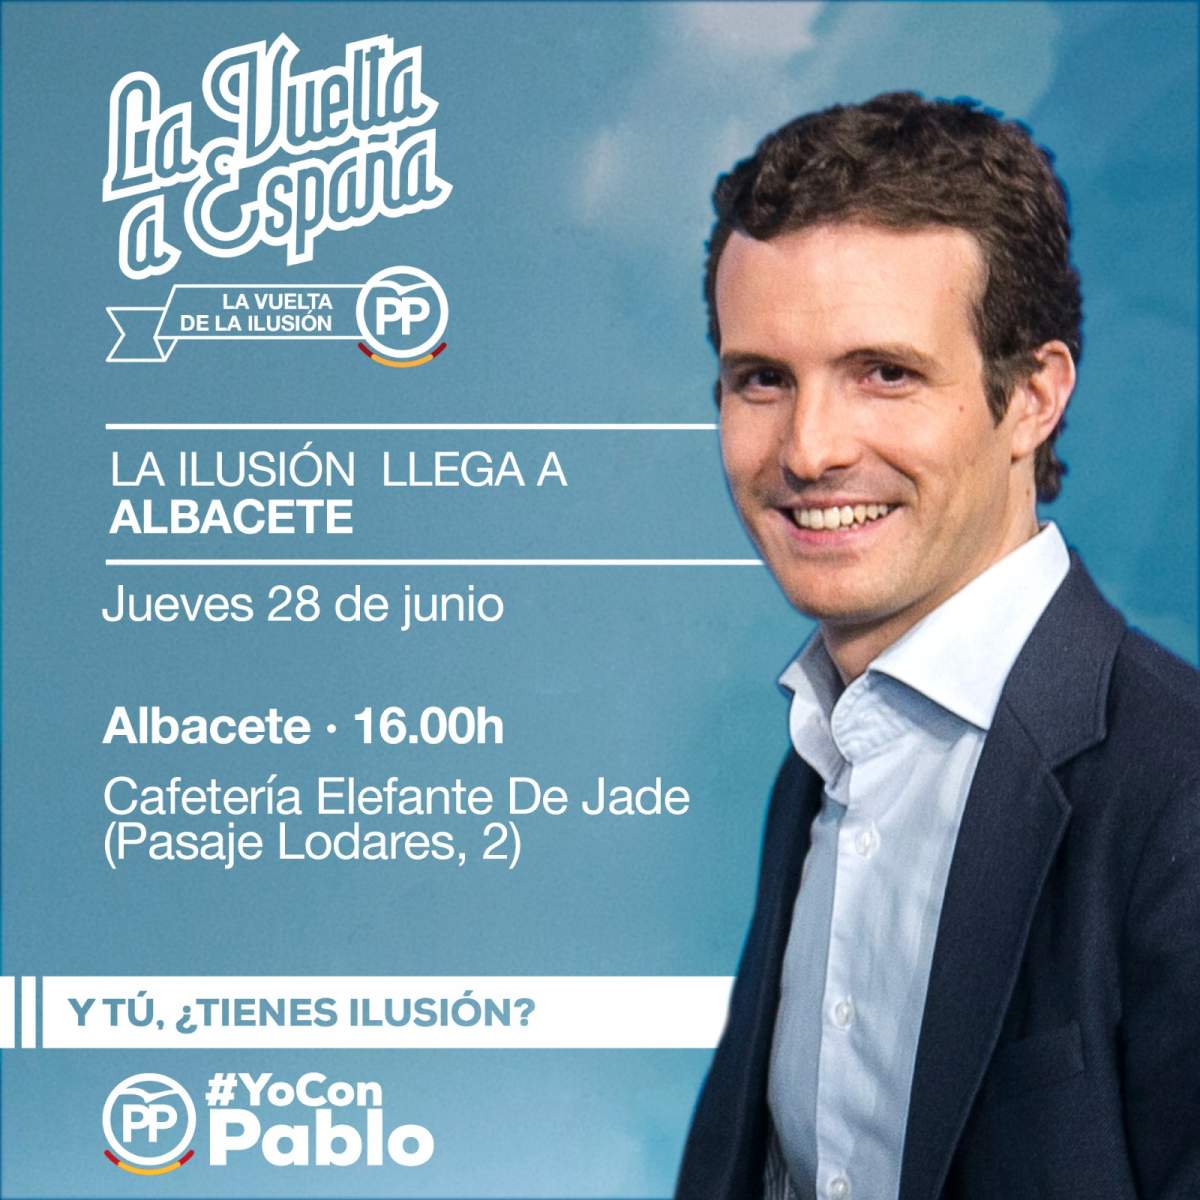 Pablo Casado en Albacete este jueves, ¿te interesa dónde estará?